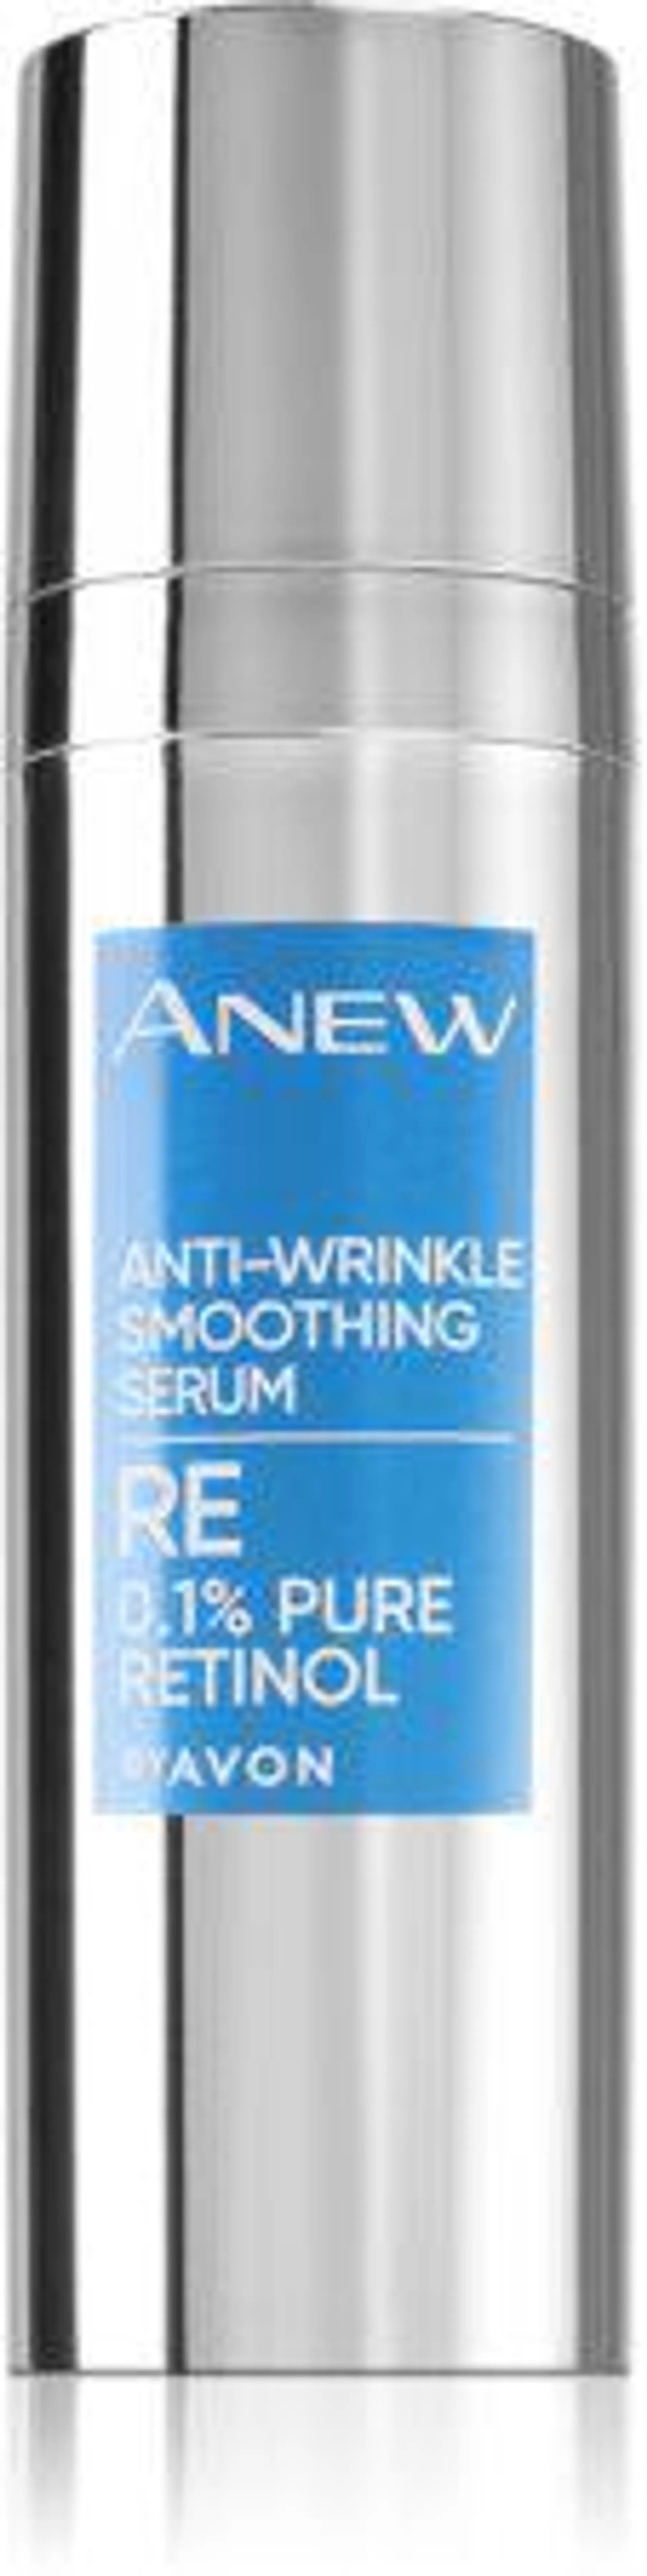 Anti - Wrinkle Serum with Retinol